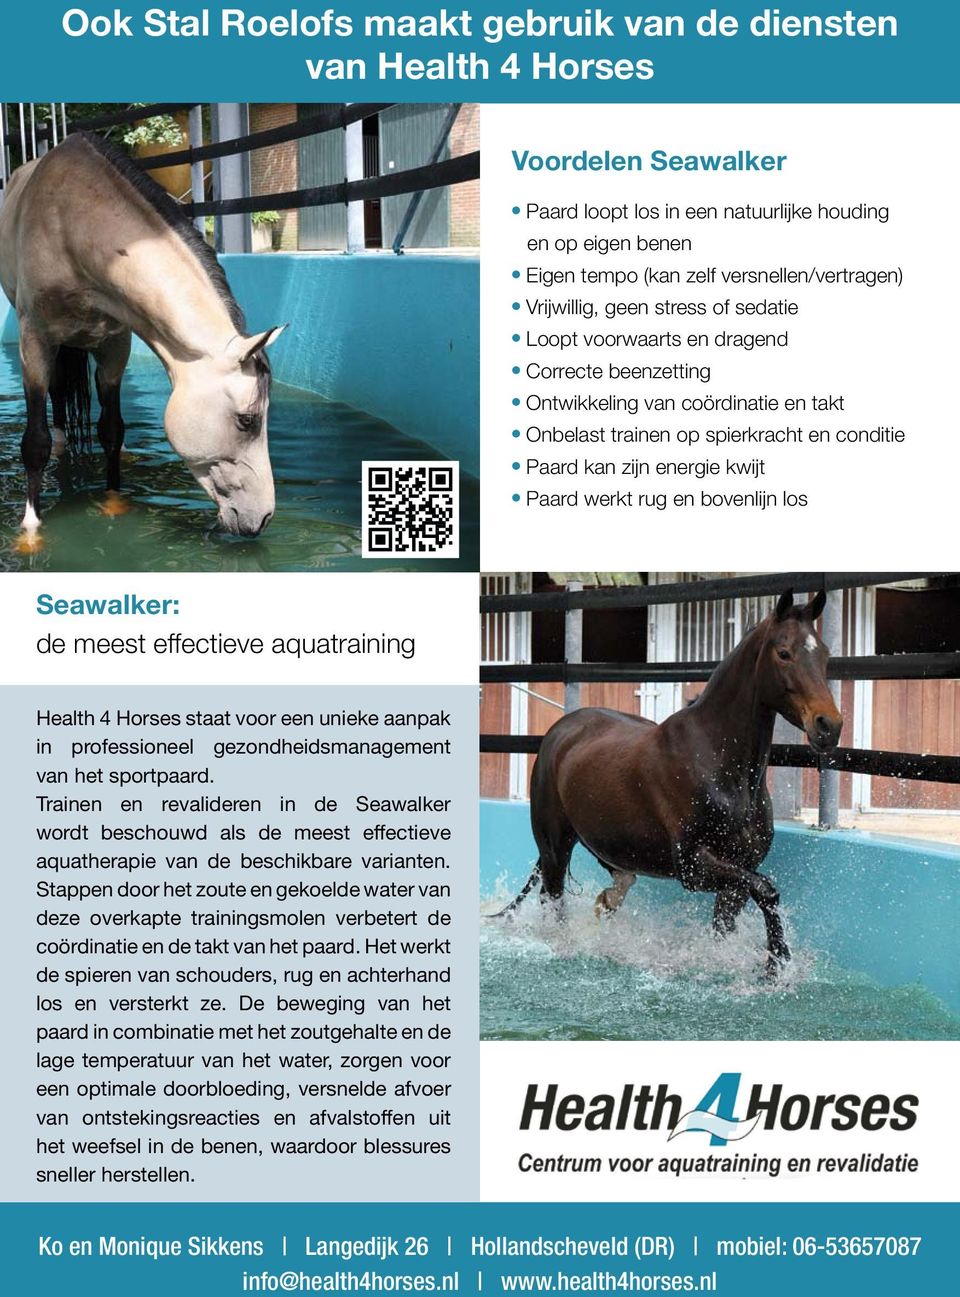 Paard kan zijn energie kwijt l Paard werkt rug en bovenlijn los Seawalker: de meest effectieve aquatraining Health 4 Horses staat voor een unieke aanpak in professioneel gezondheidsmanagement van het